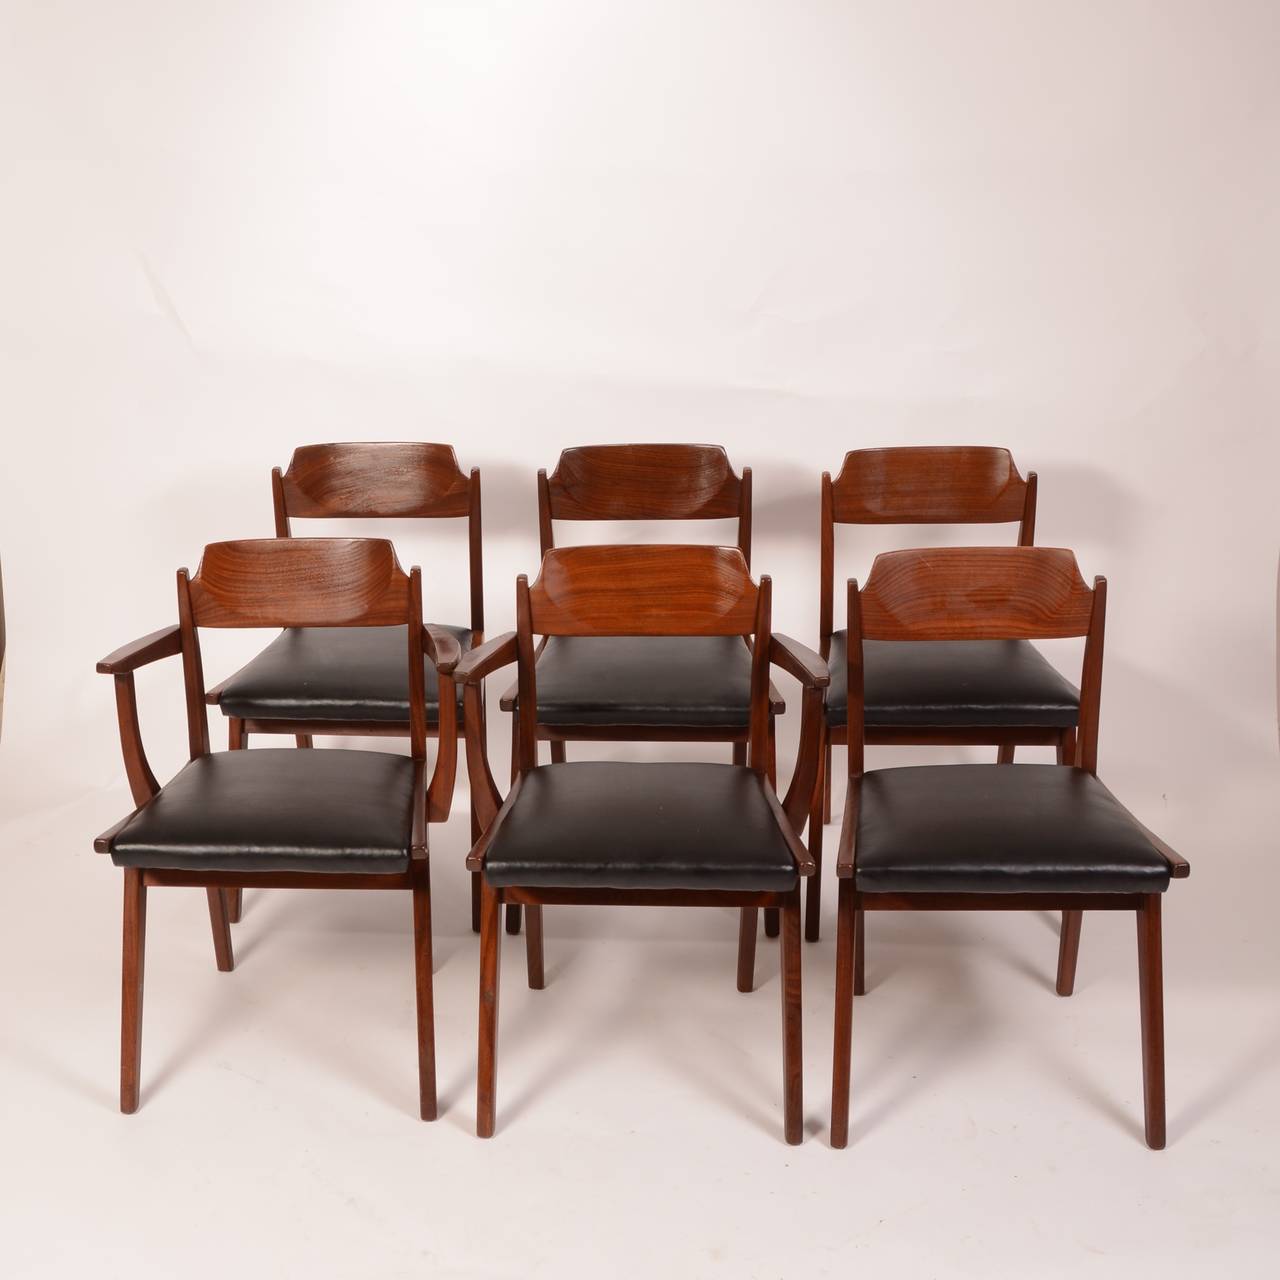 Un ensemble de 5 chaises de salle à manger conçu par Jan Kuypers pour Imperial. L'ensemble comprend une chaise capitaine (il y en a 2 sur la photo).
 
 